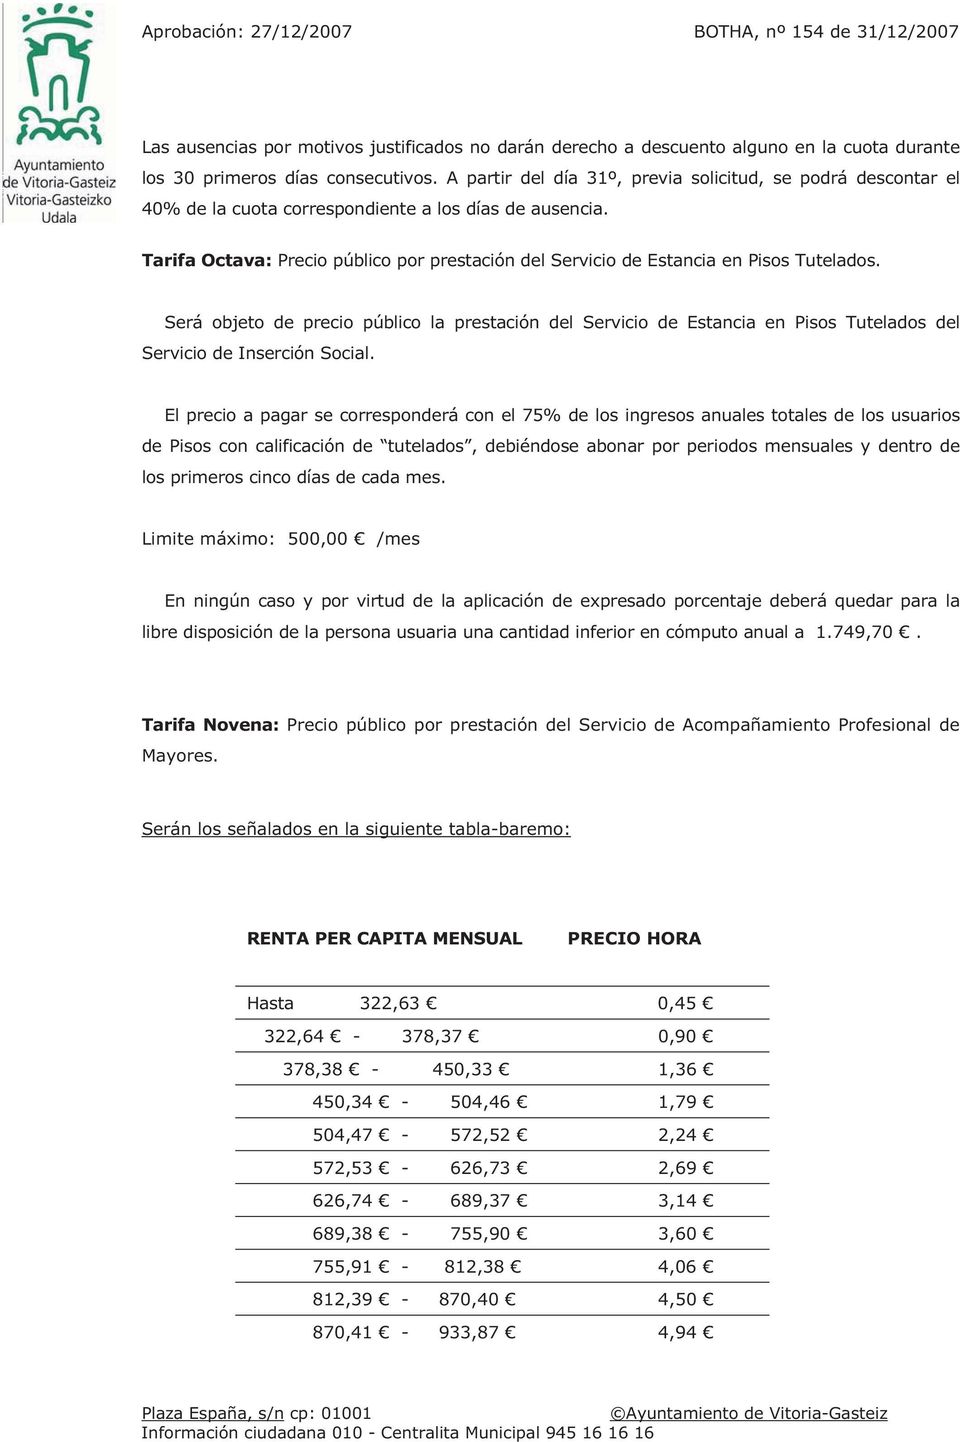 Tarifa Octava: Precio público por prestación del Servicio de Estancia en Pisos Tutelados.